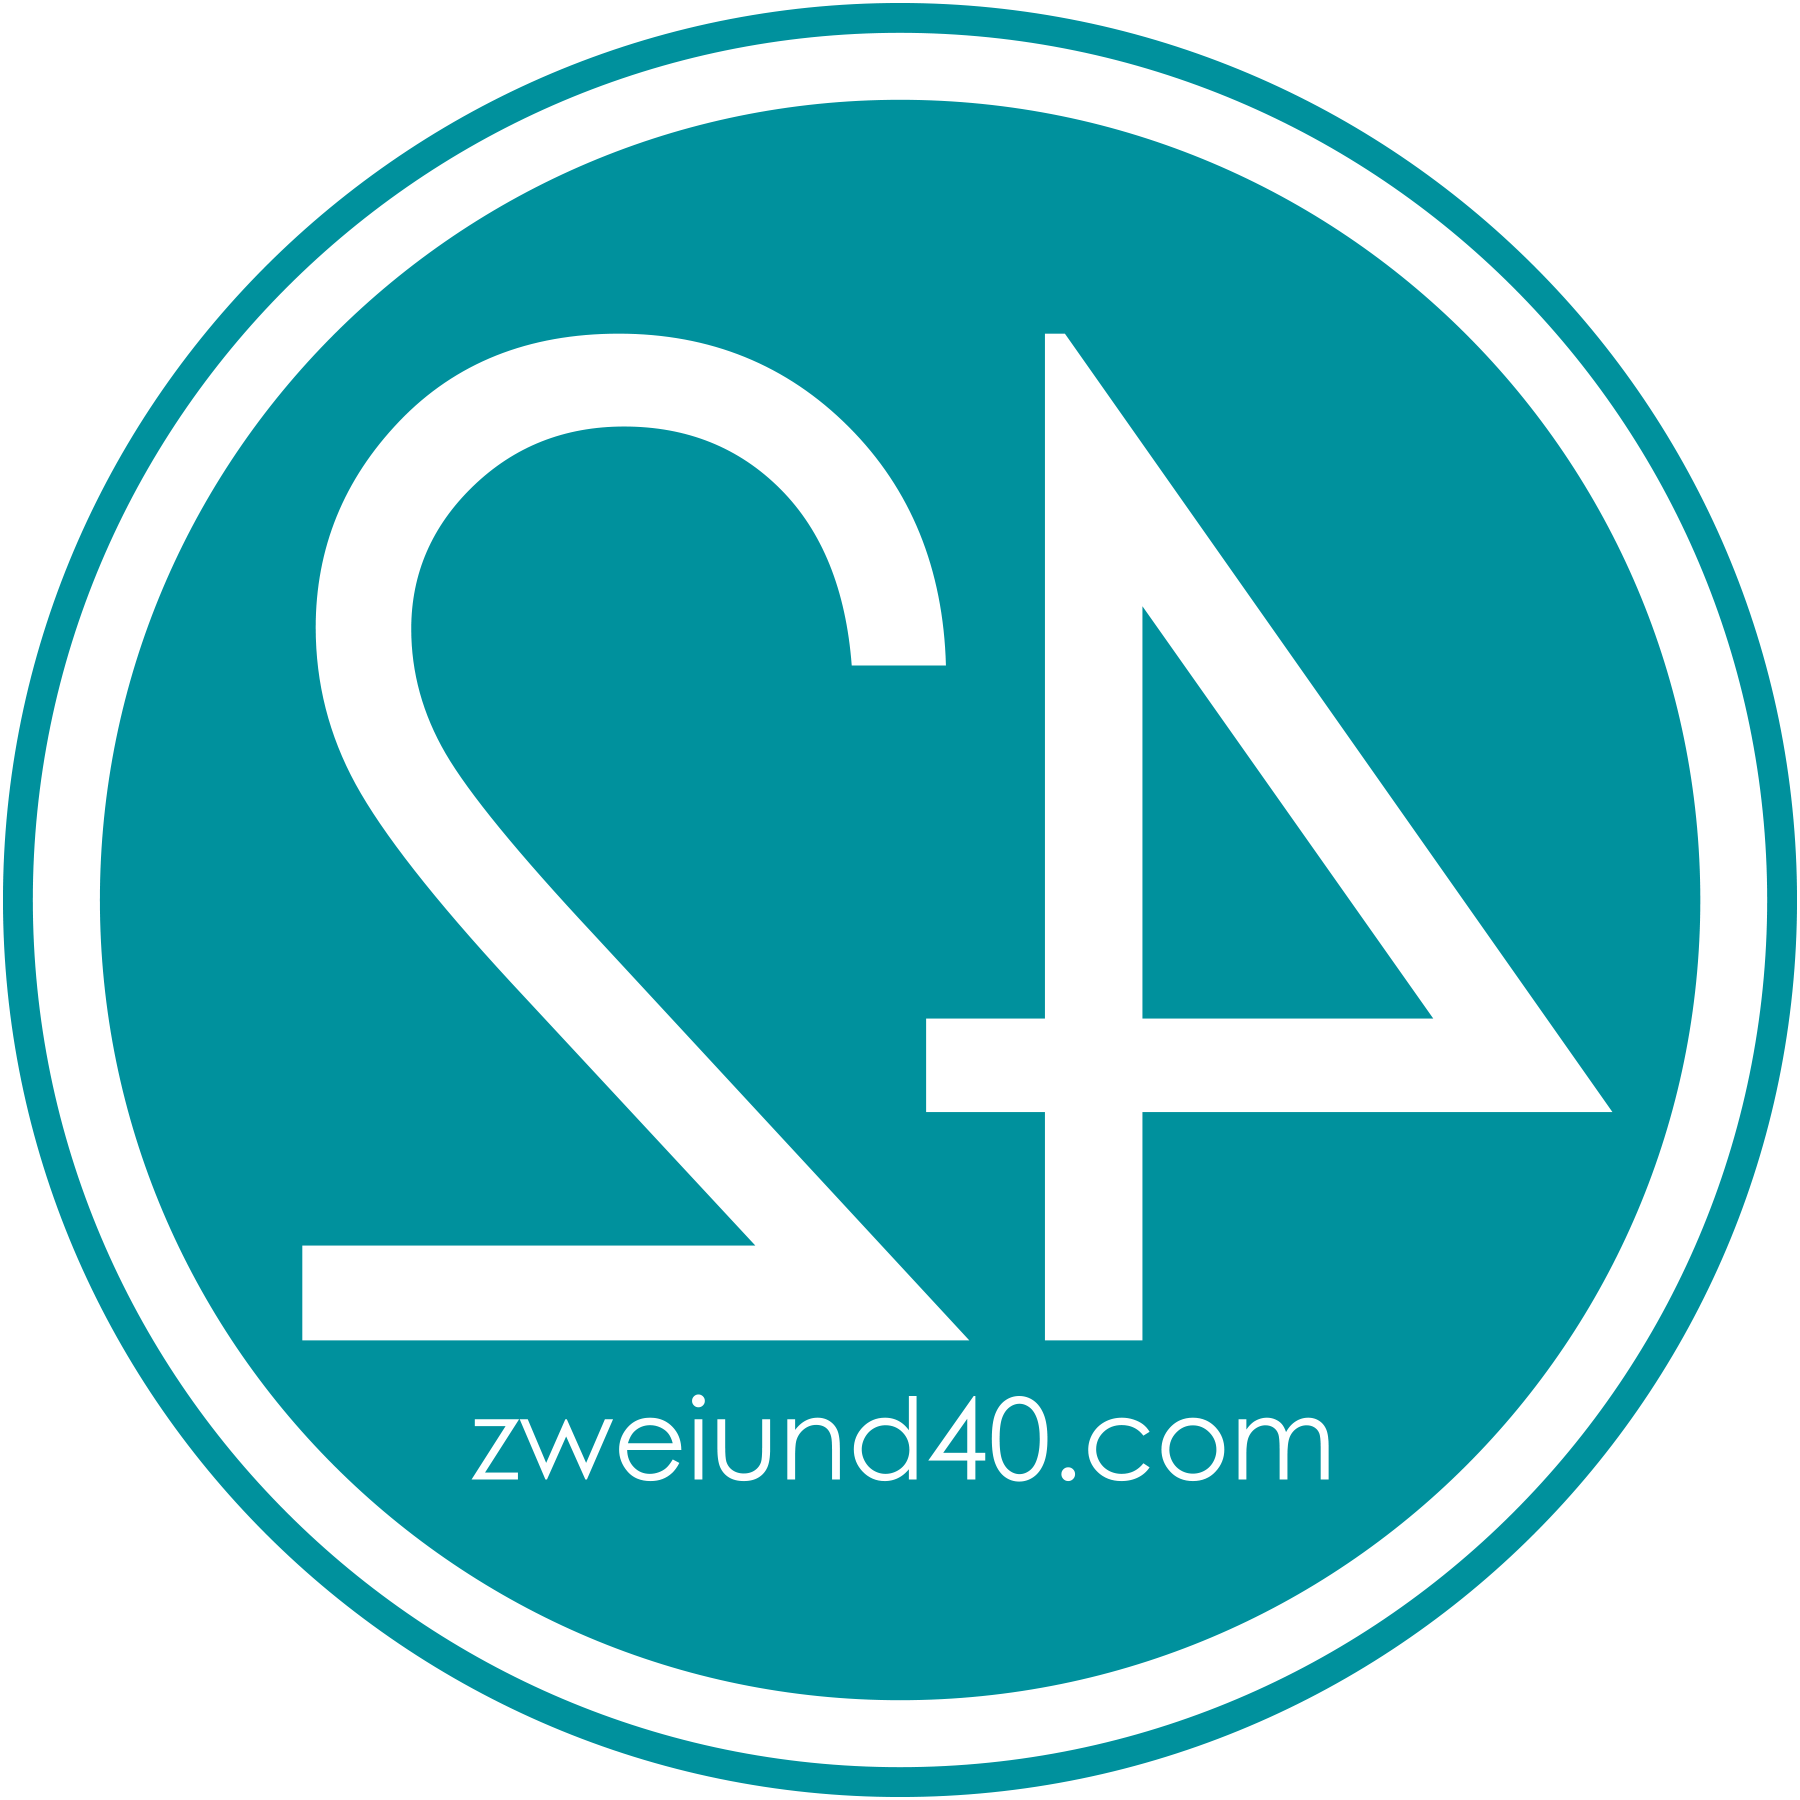 Spielhallen Marketing durch zwei&40 GmbH - Logo